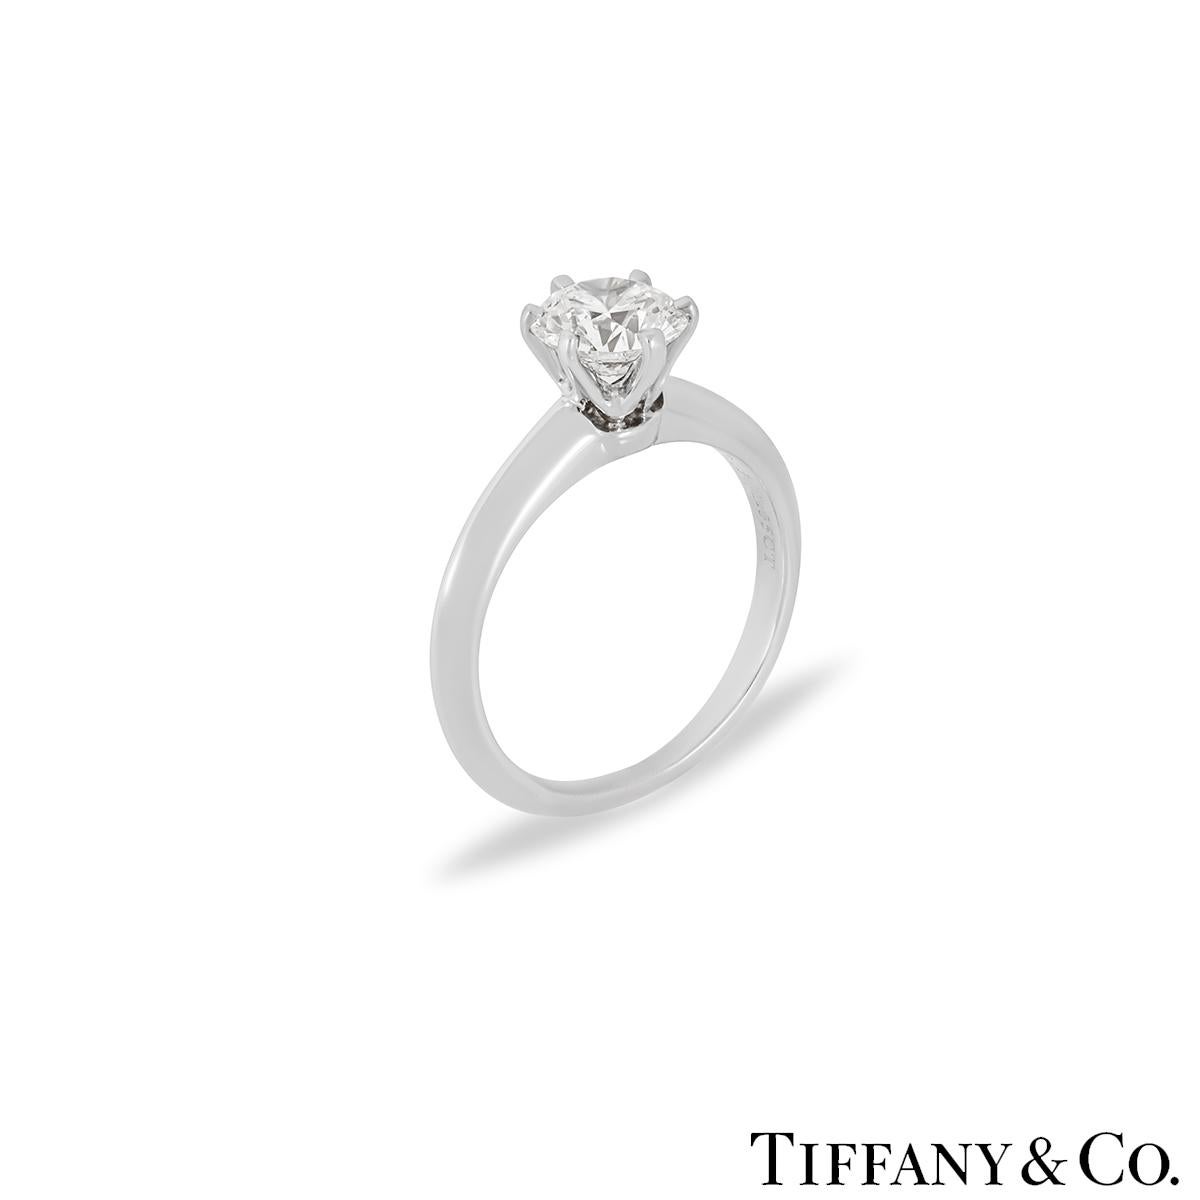 Une superbe bague en diamant en platine de Tiffany & Co. La bague est sertie au centre d'un diamant rond de taille brillant de 1,05 ct dans une monture classique. Le diamant est de couleur H et de pureté VS2. La bague est actuellement de taille J